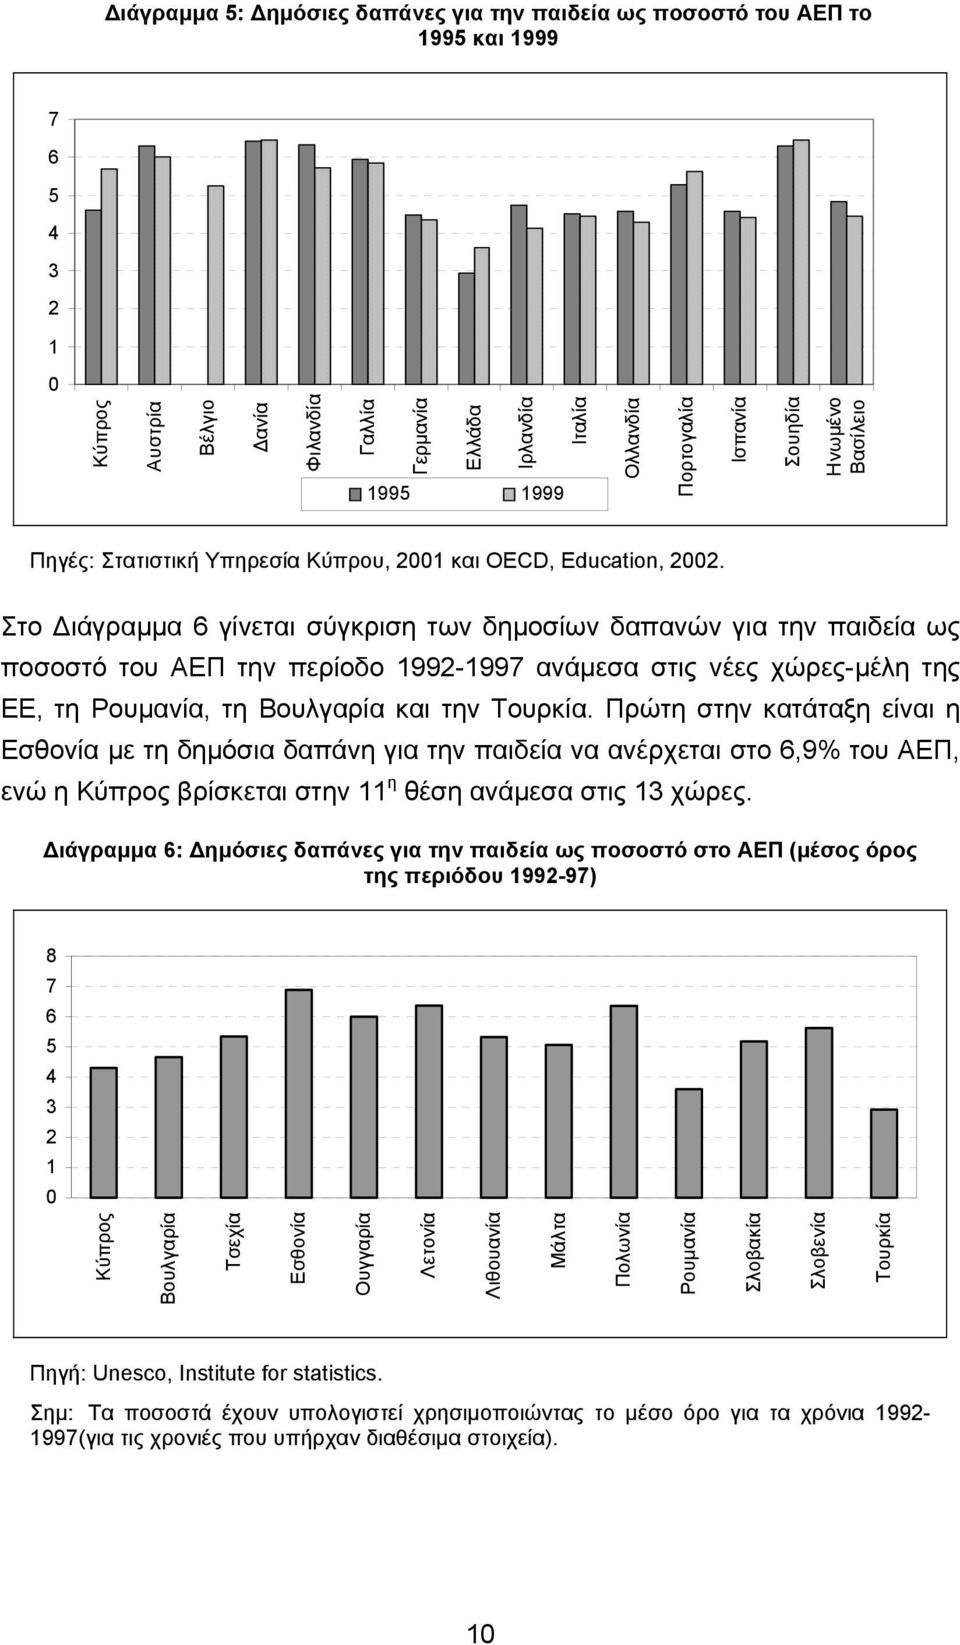 Στο ιάγραµµα 6 γίνεται σύγκριση των δηµοσίων δαπανών για την παιδεία ως ποσοστό του ΑΕΠ την περίοδο 1992-1997 ανάµεσα στις νέες χώρες-µέλη της ΕΕ, τη Ρουµανία, τη Βουλγαρία και την Τουρκία.